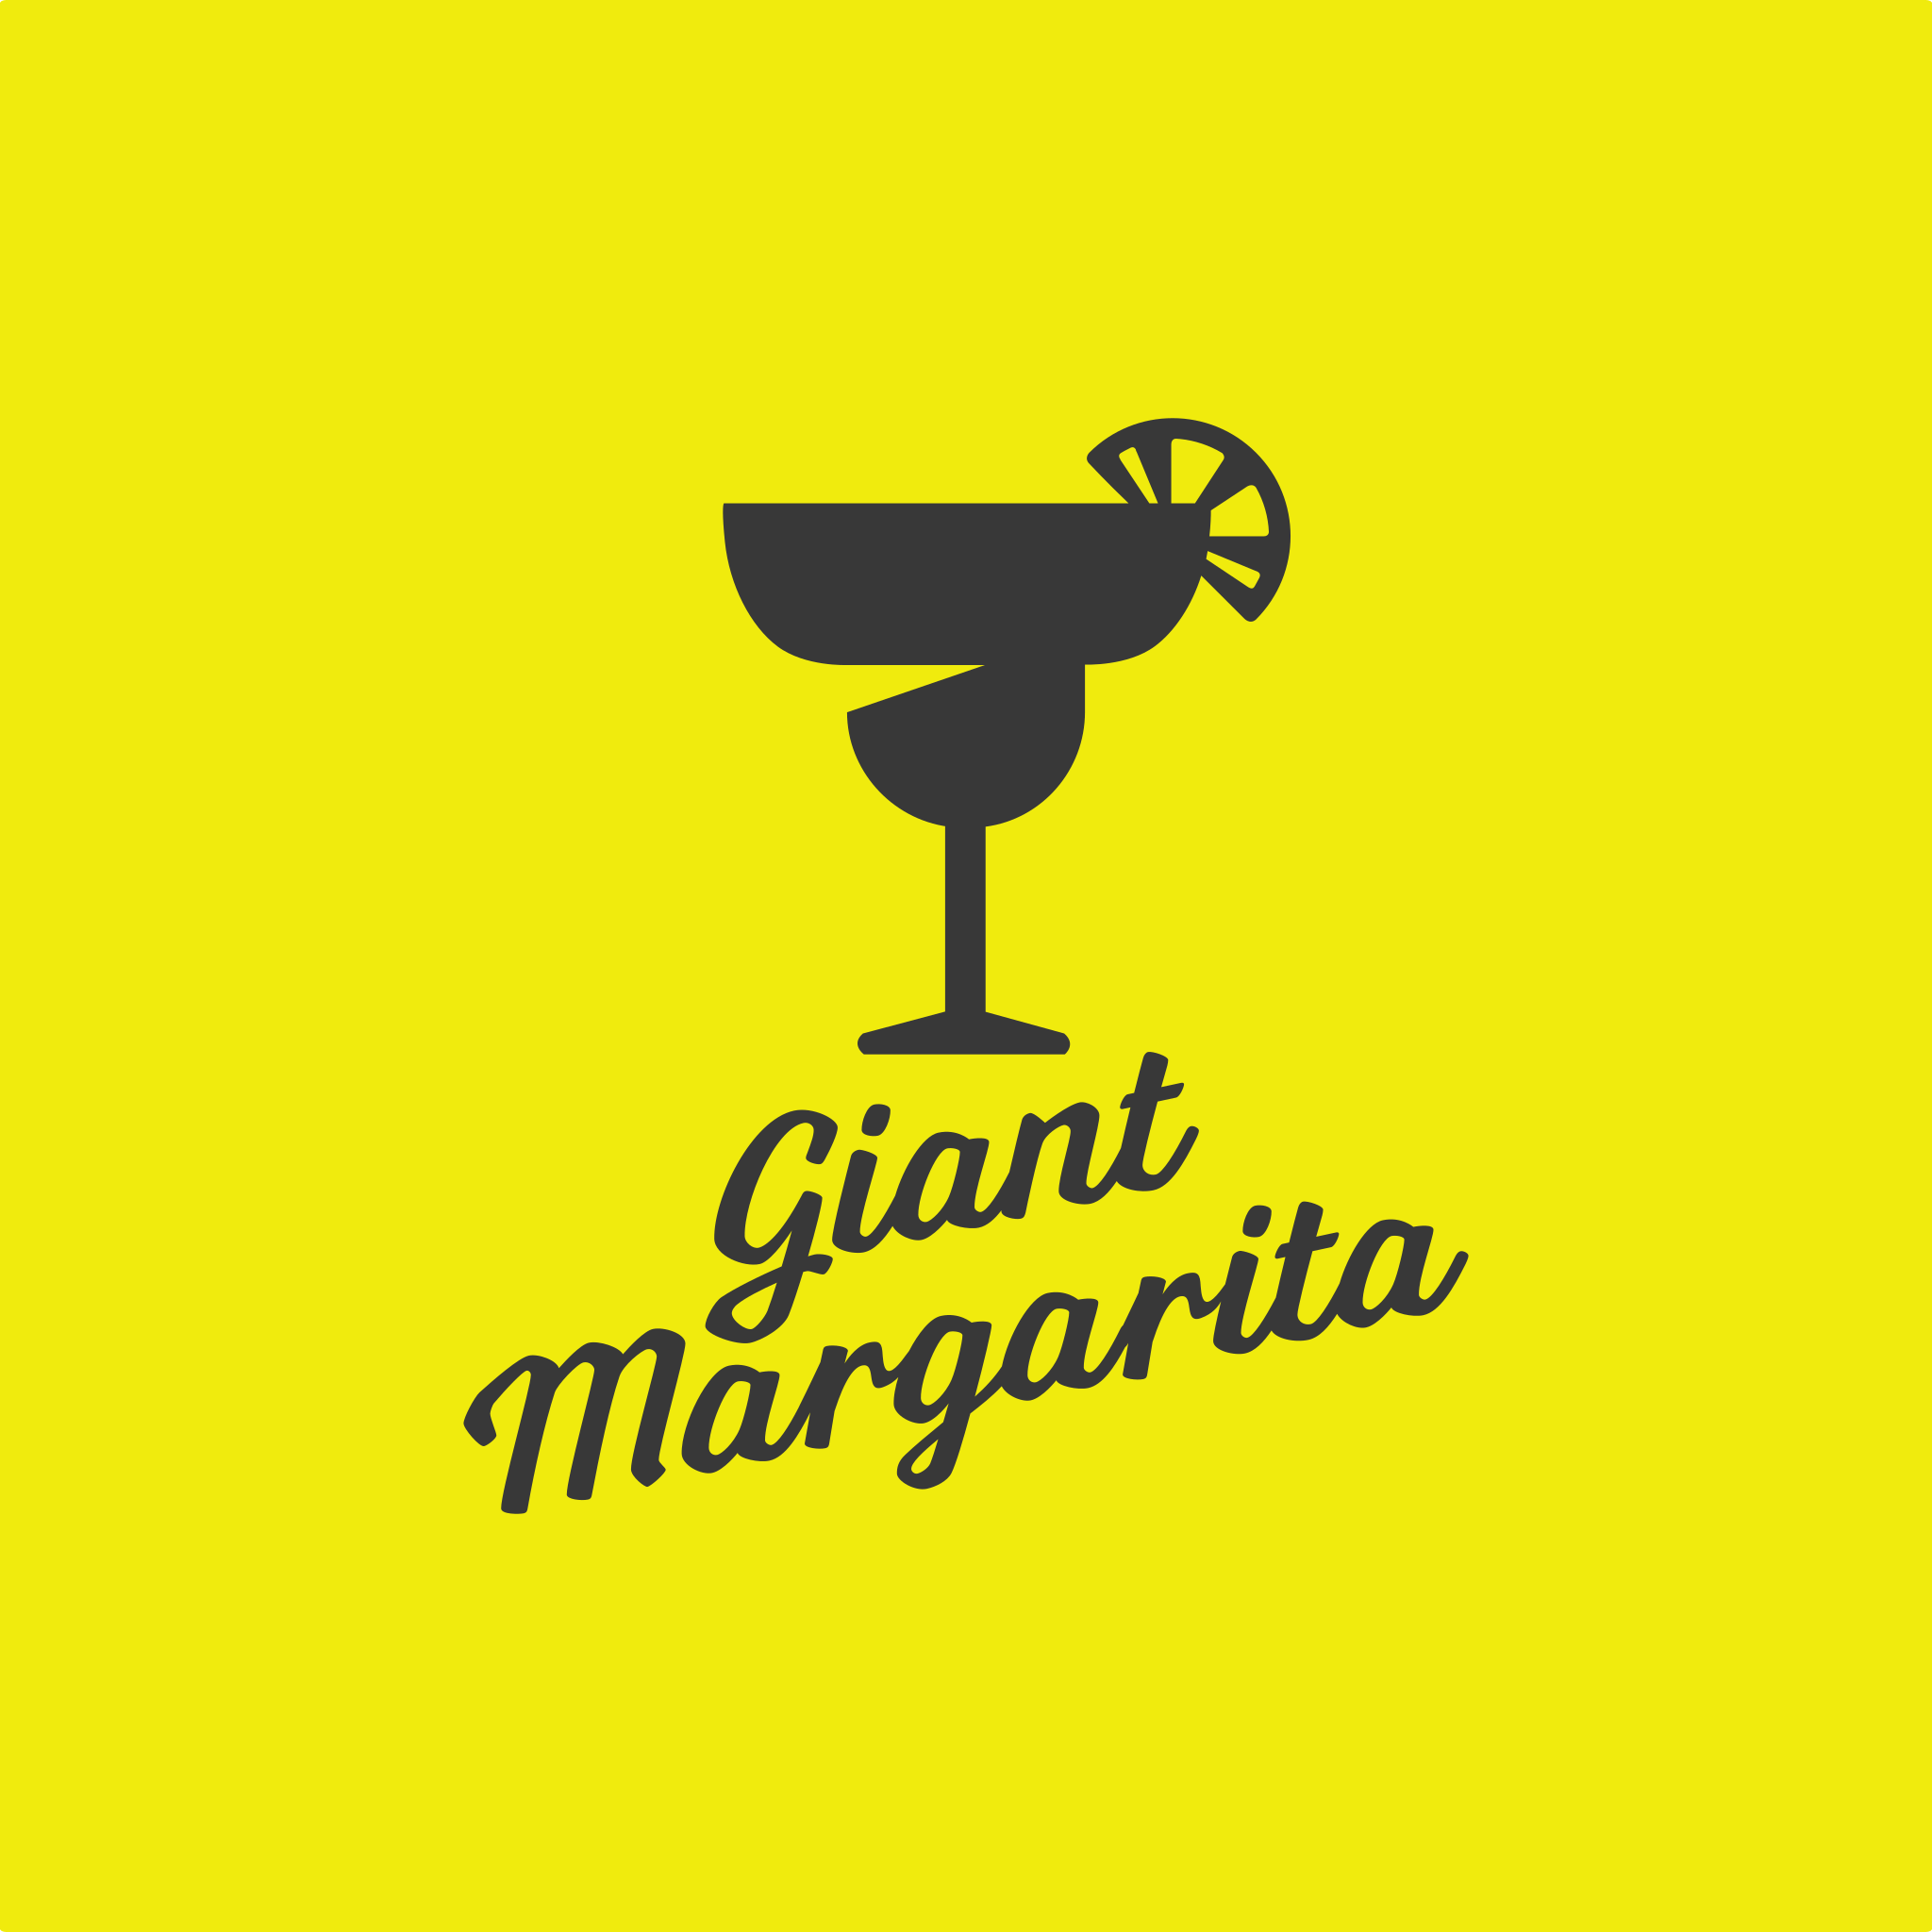 Margarita Logo - Giant Margarita Logo.png